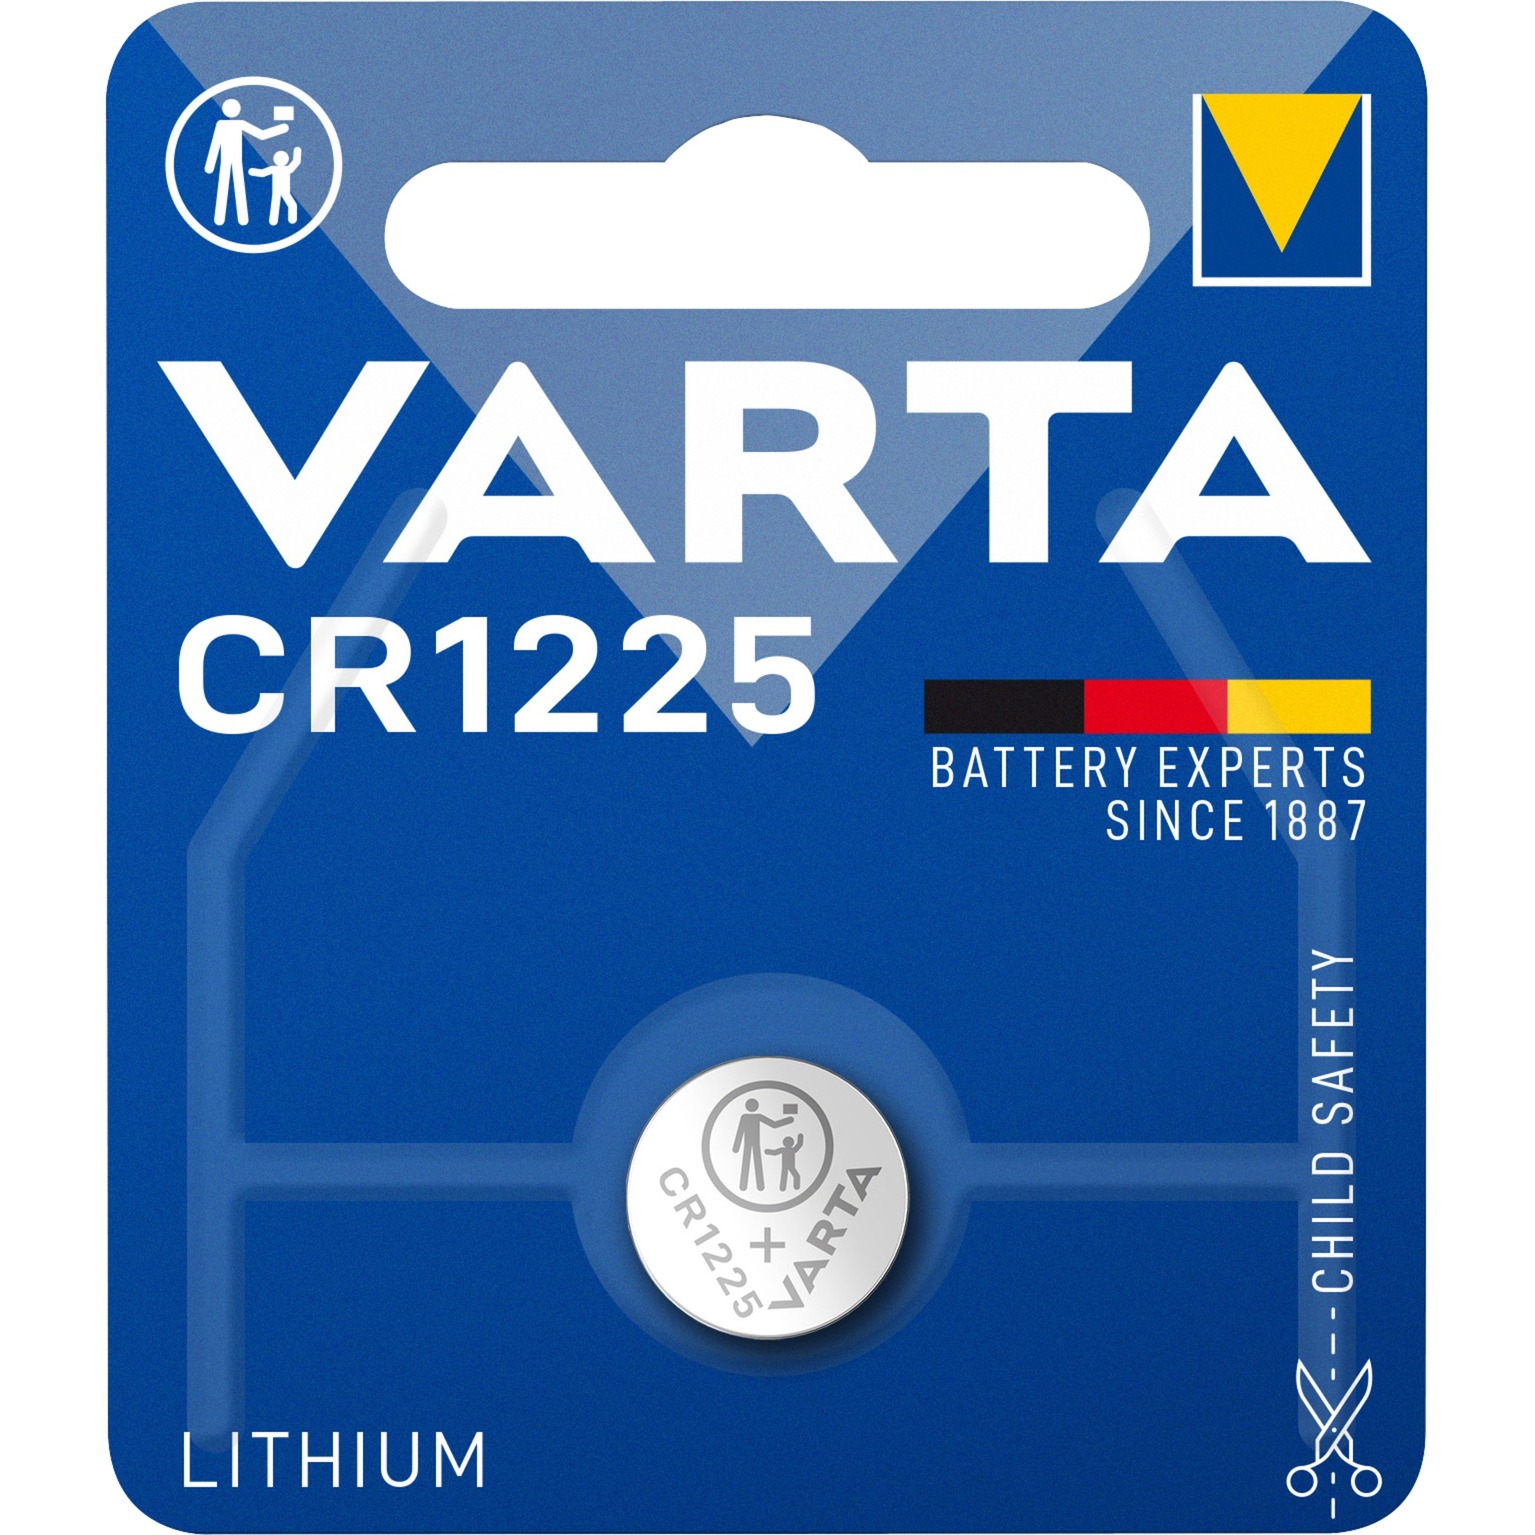 Image of Alternate - Professional CR1225, Batterie online einkaufen bei Alternate